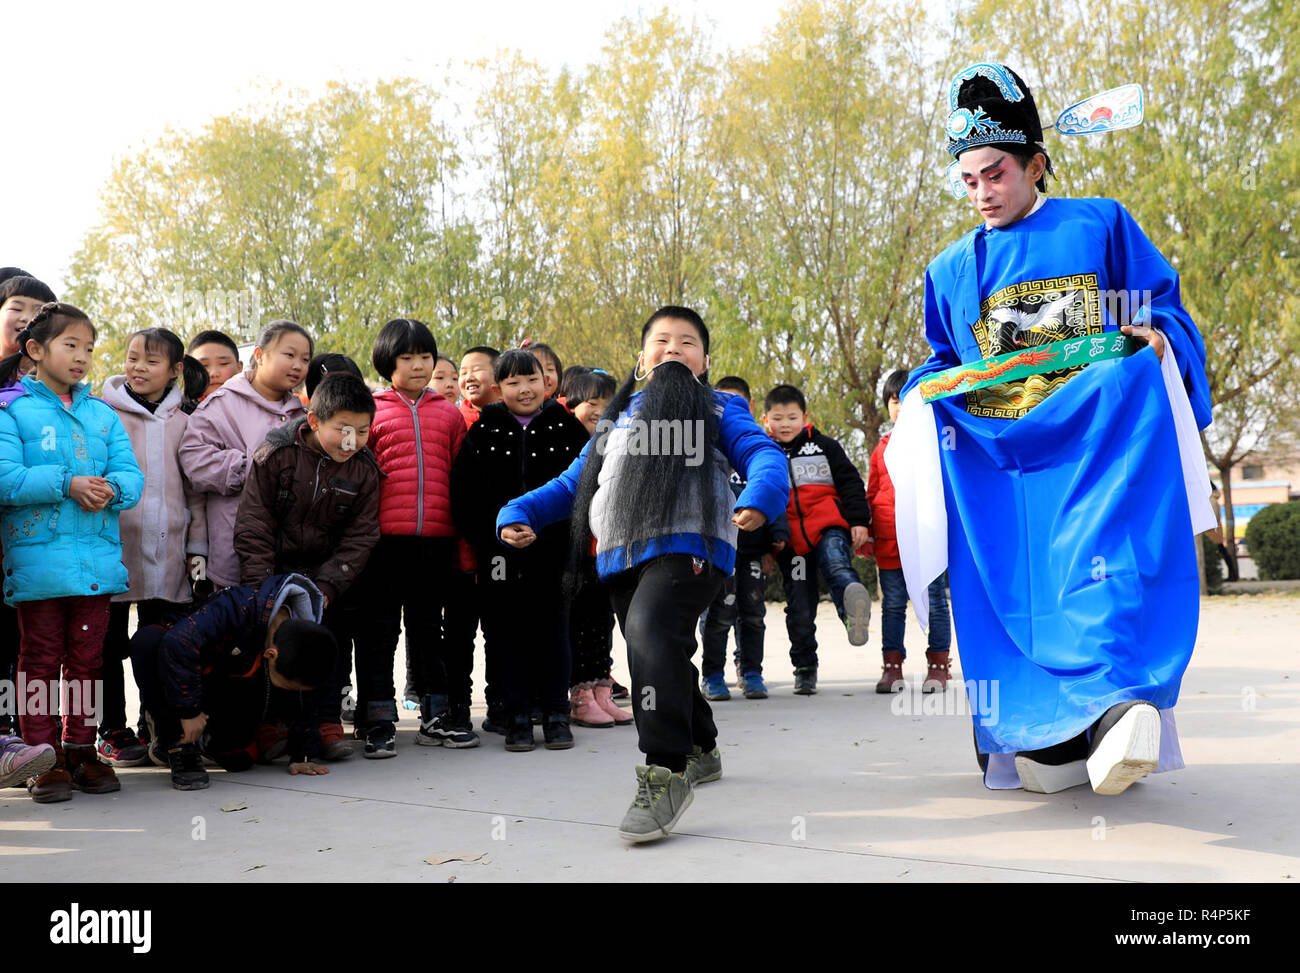 (181128) - SHIJIAZHUANG, November 28, 2018 (Xinhua) - ein Schauspieler von "Kehaiqiang" interagiert mit Schülerinnen an Lijiazhuang Grundschule in Jinzhou Stadt Shijiazhuang, der Hauptstadt von North China Provinz Hebei, Nov. 28, 2018. 'Kehaiqiang', lokalen Drama von Balladen entstanden, als einer der immateriellen Kulturerbes Shijiazhuang in 2013 aufgeführt wurde. Eine Truppe von 'Kehaiqiang' mit Schülern in Campus interagiert, um ihre Interessen in die traditionelle Kunst (Xinhua/Zhao Danhui) (zwx zu heben) Stockfoto